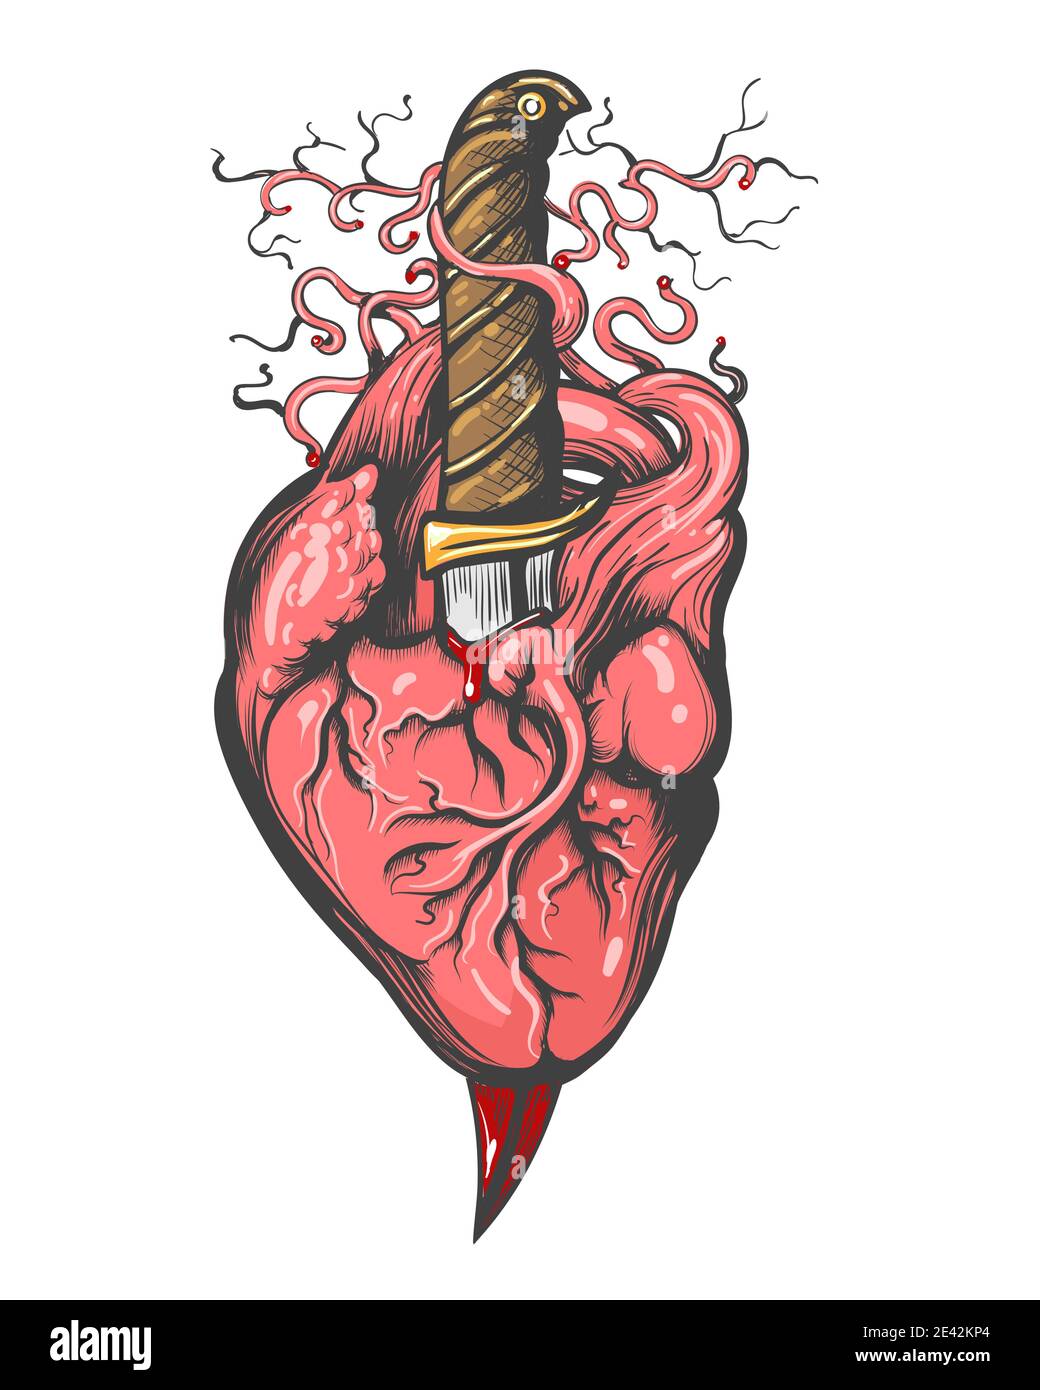 Tatuaggio di cuore trafitto da Dagger. Illustrazione vettoriale. Illustrazione Vettoriale